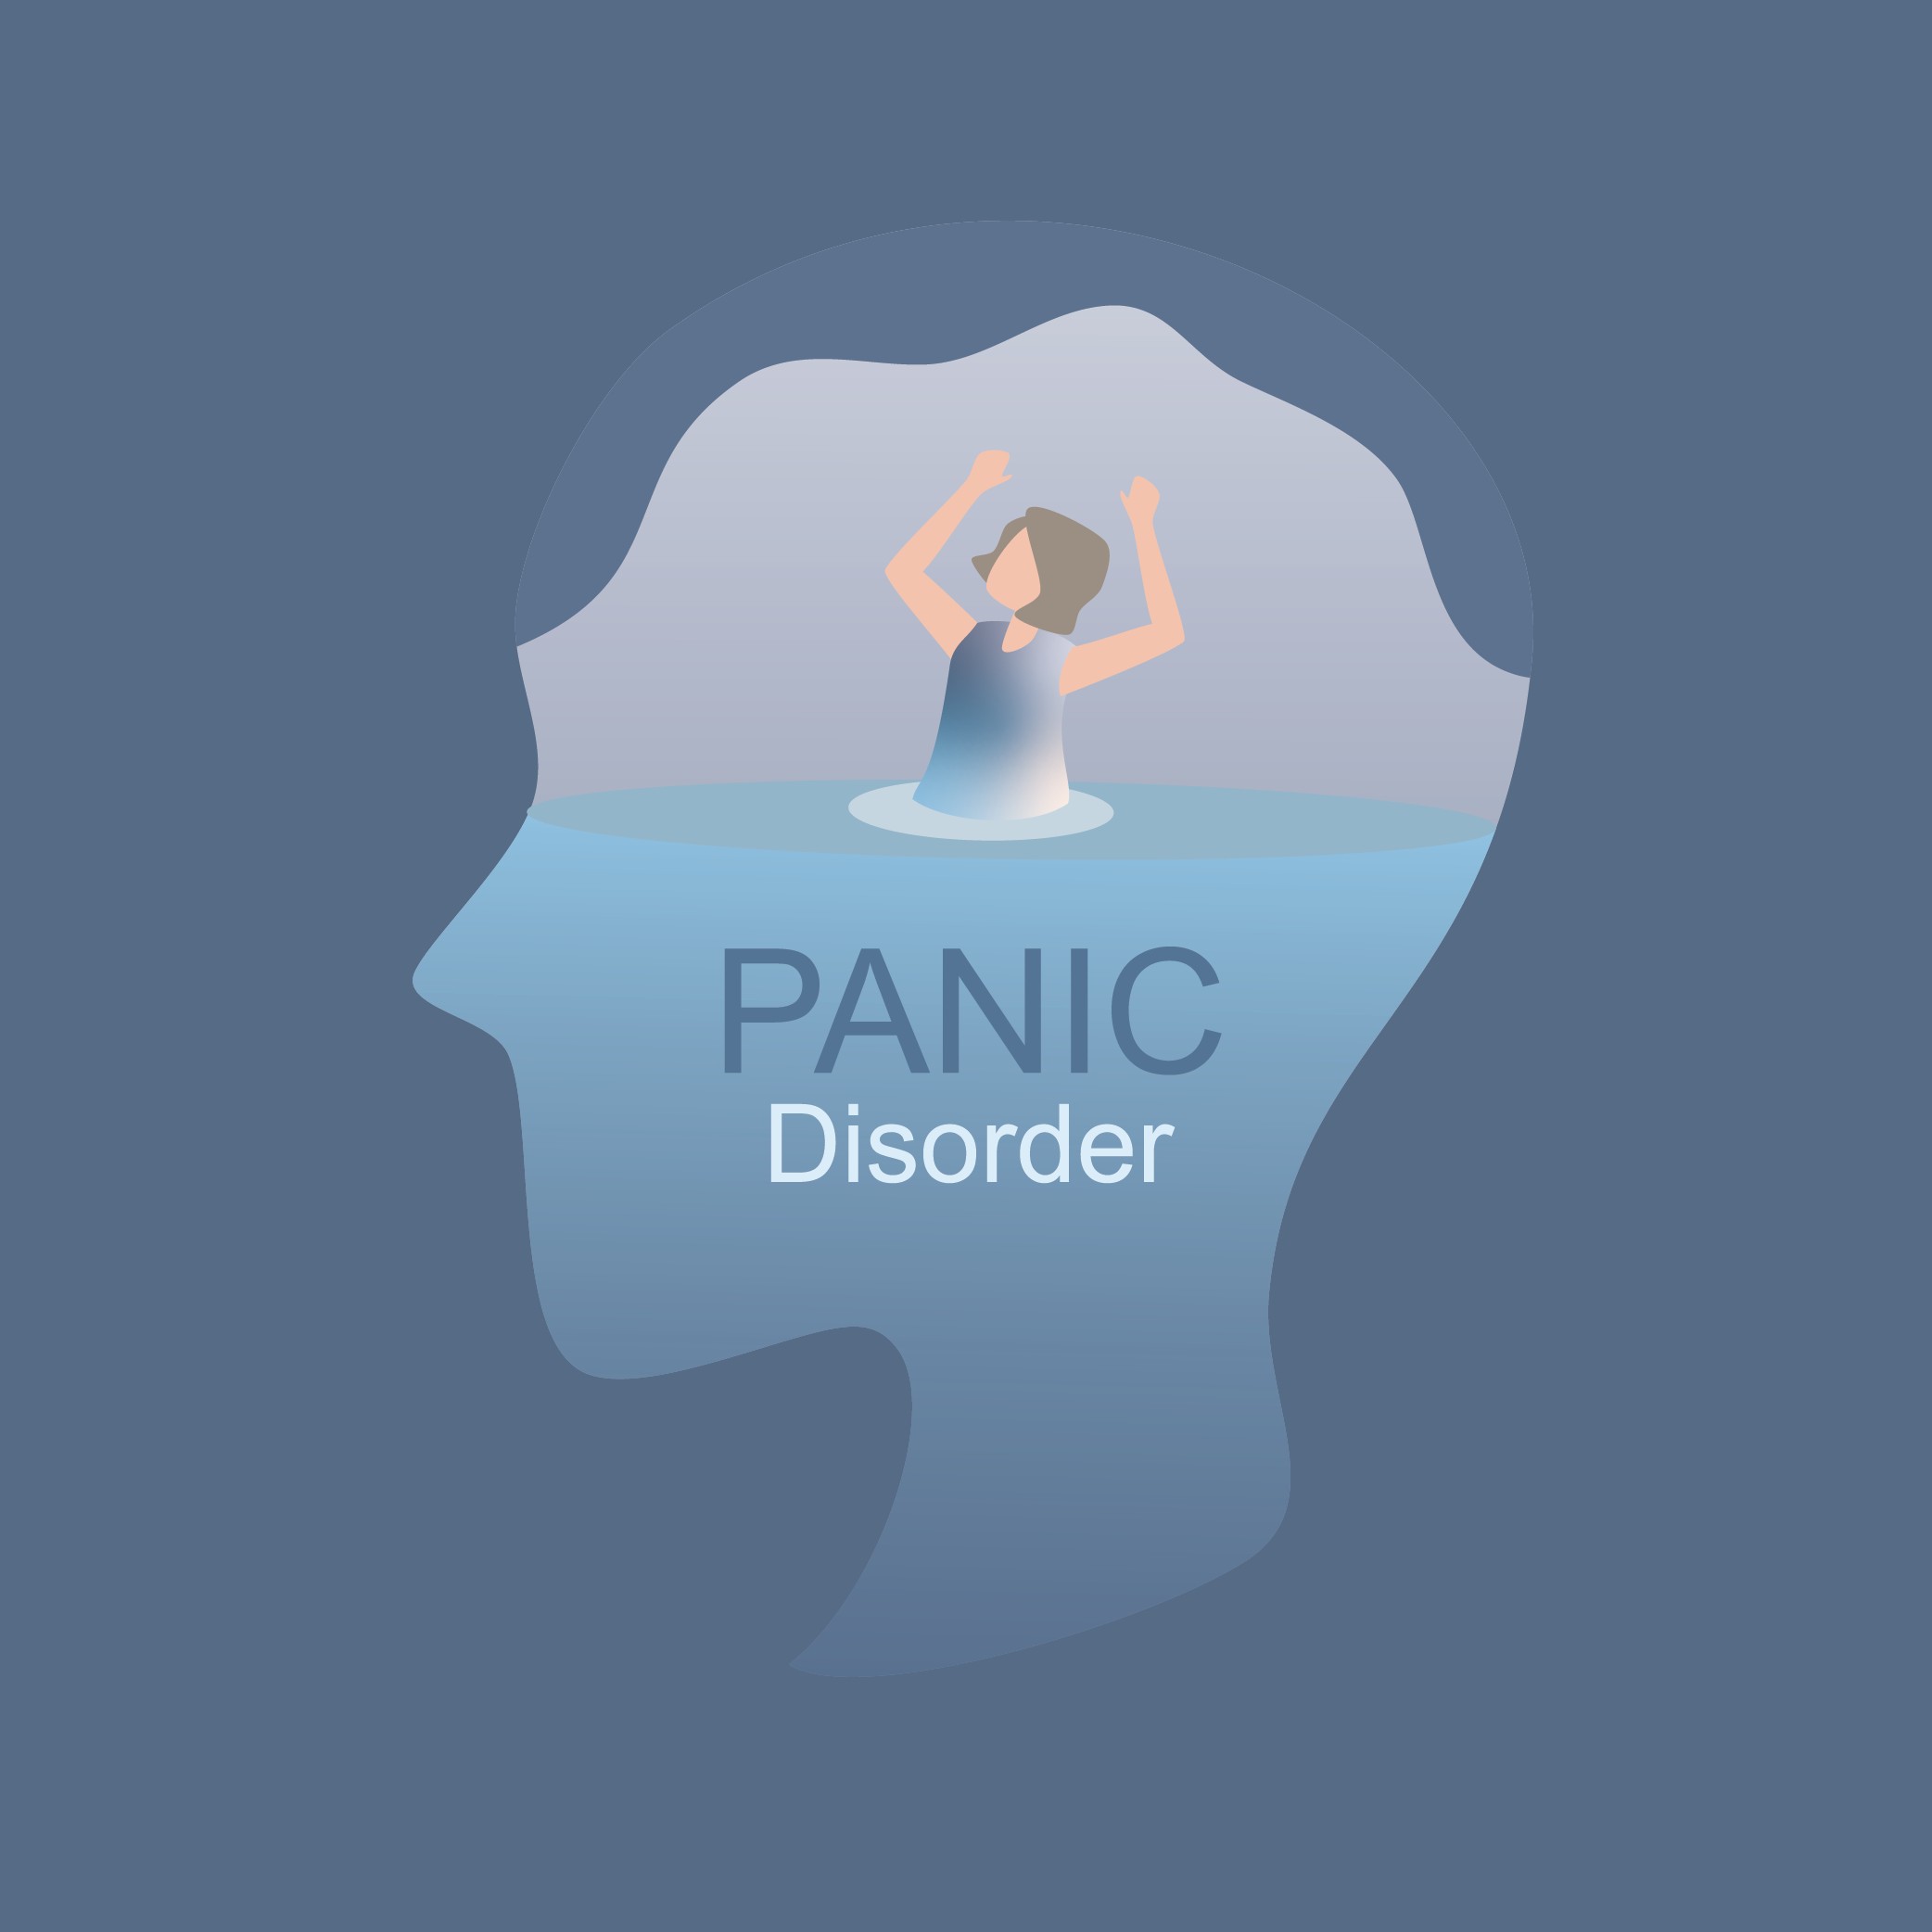 โรคแพนิคPanic Disorder ปัญหาสุขภาพที่เกิดจากการวิตกกังวล